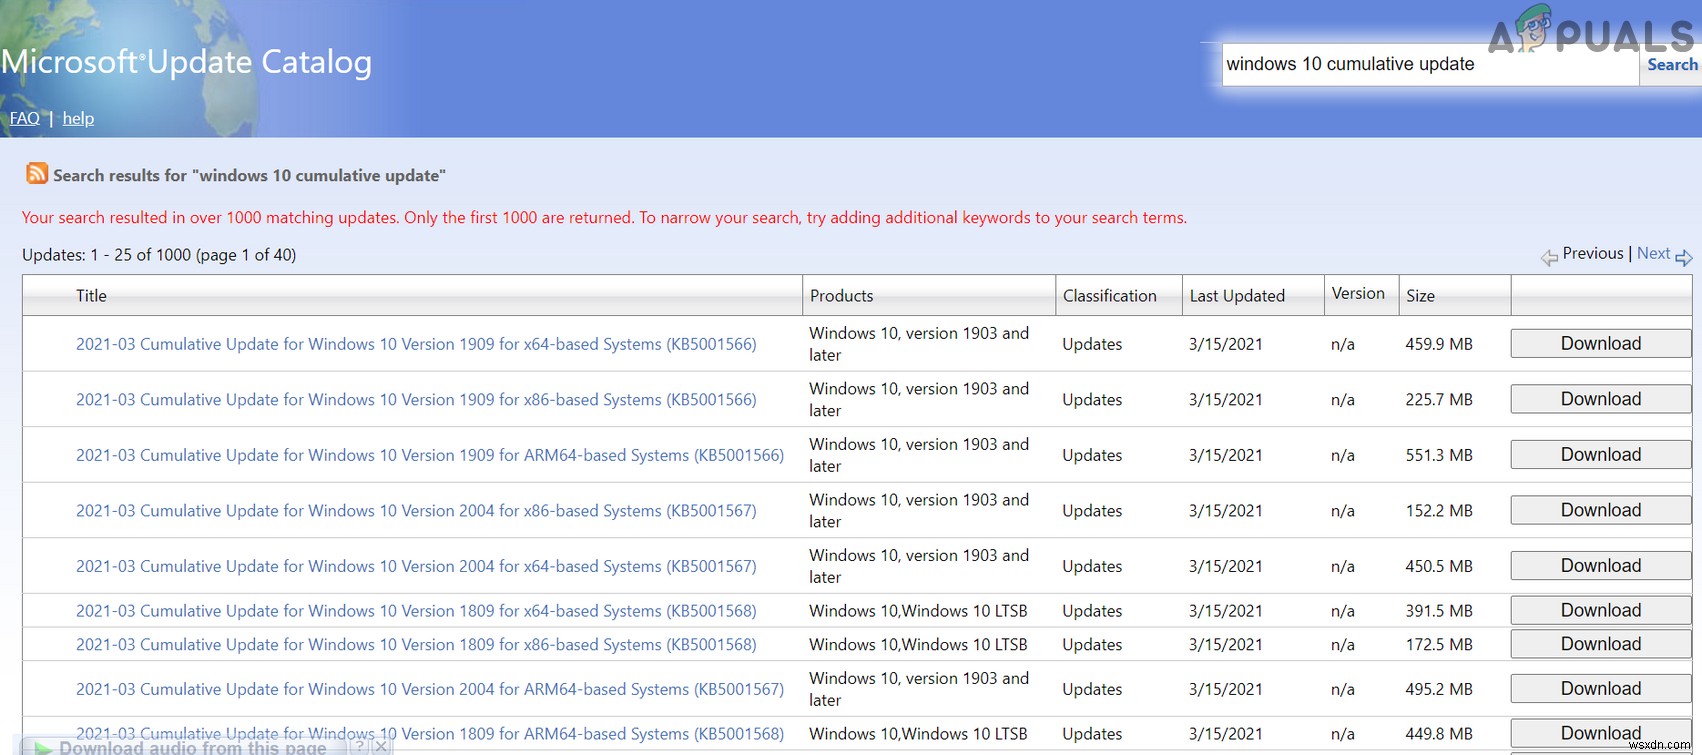 [해결됨] Windows Update에서 업데이트 서비스 중 하나가 제대로 실행되지 않음 